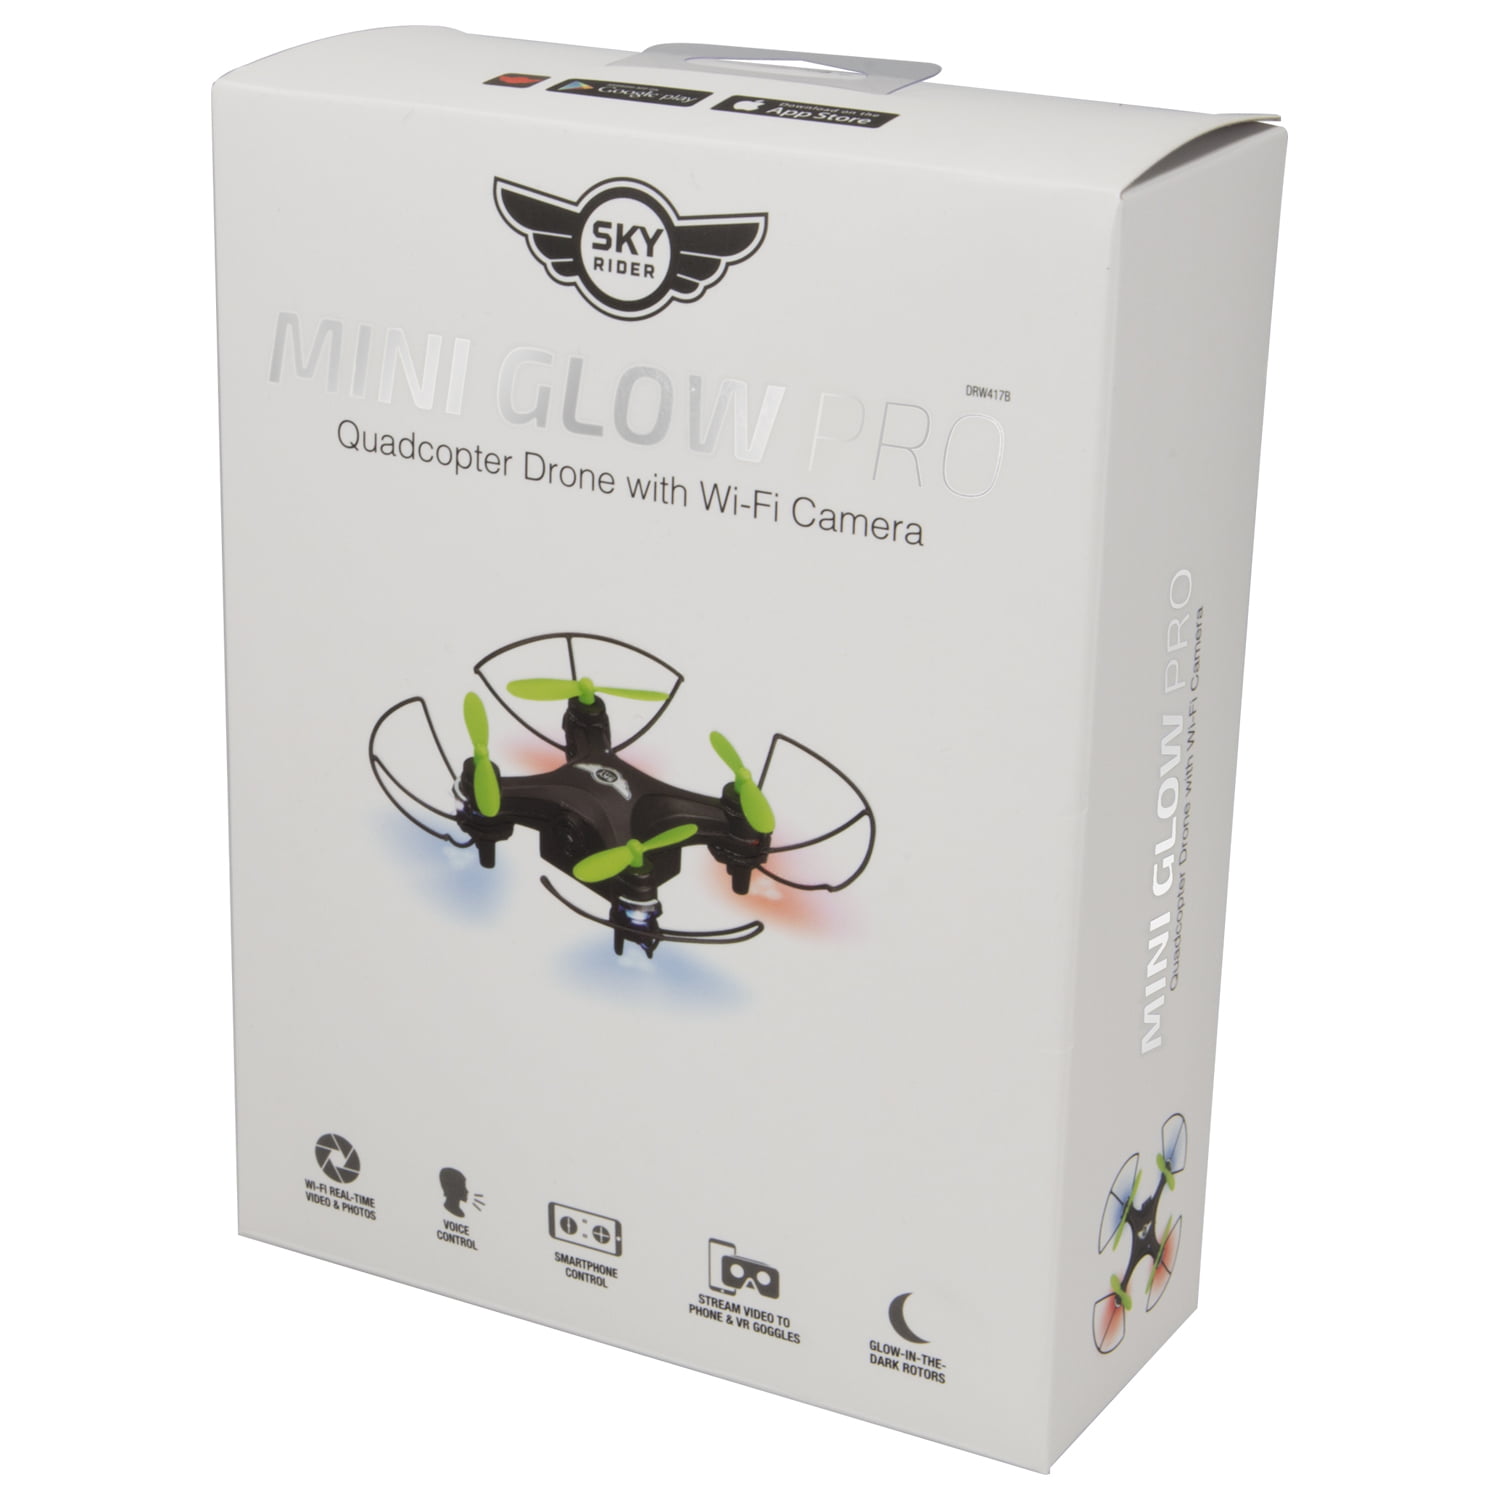 Sky Rider Mini Glow Pro Quadcopter 